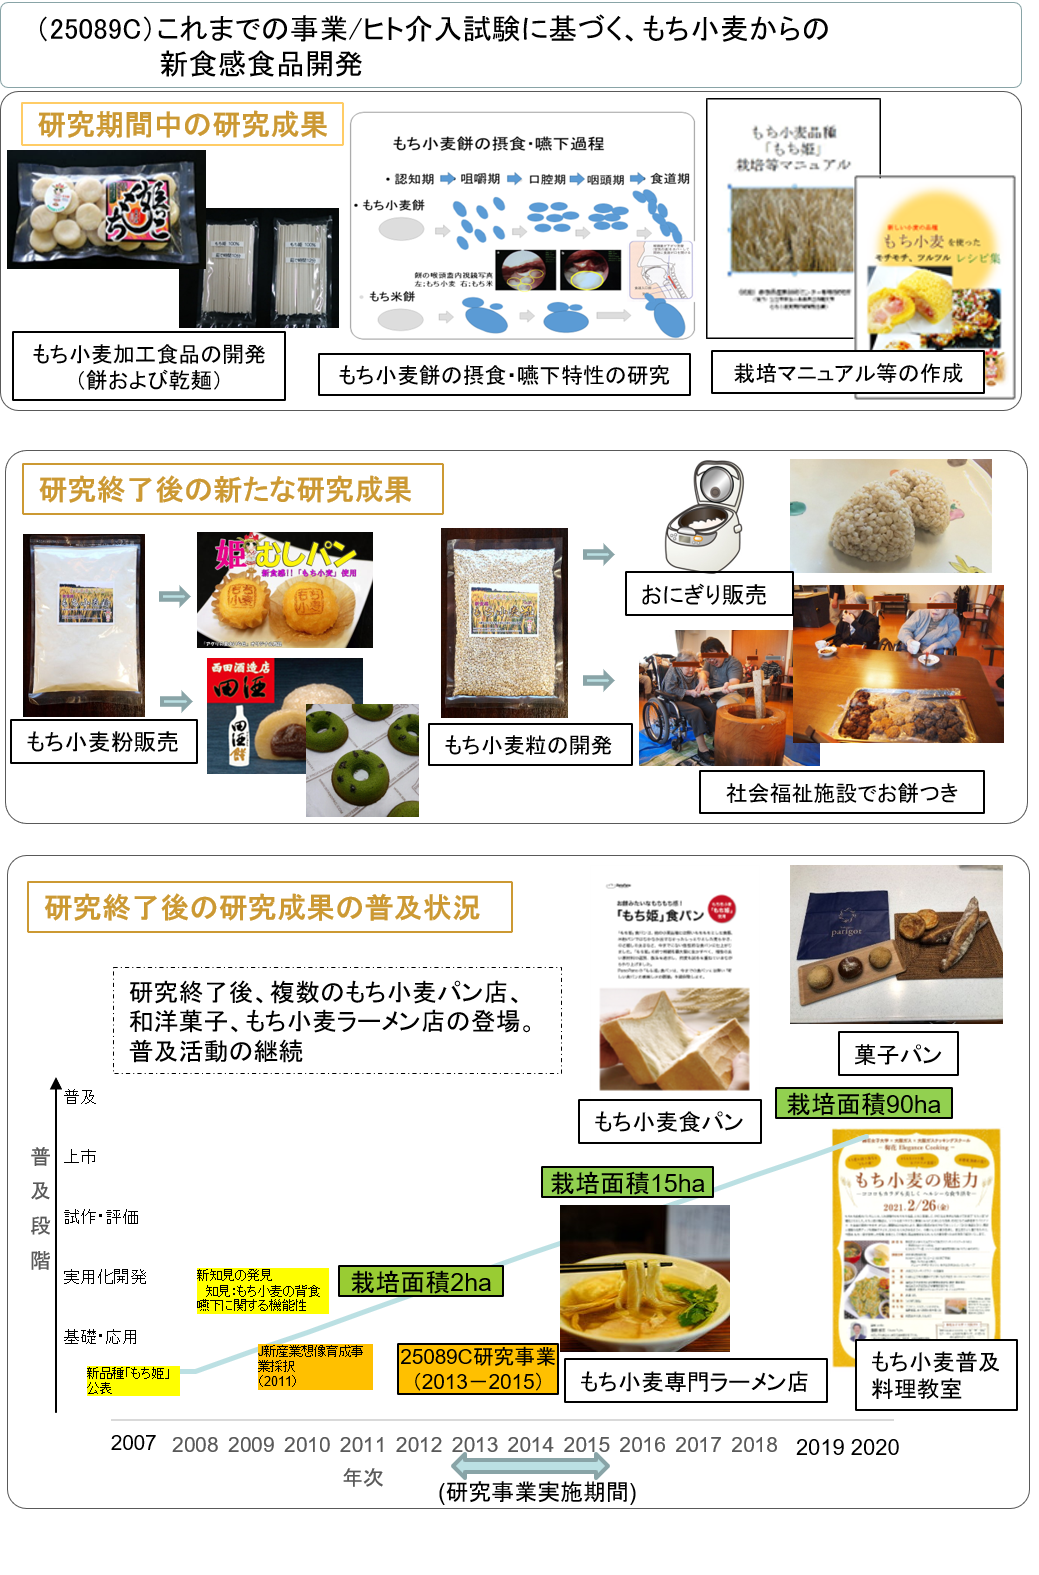 (25089C) これまでの事業/ヒト介入試験に基づく、もち小麦からの新食感食品開発